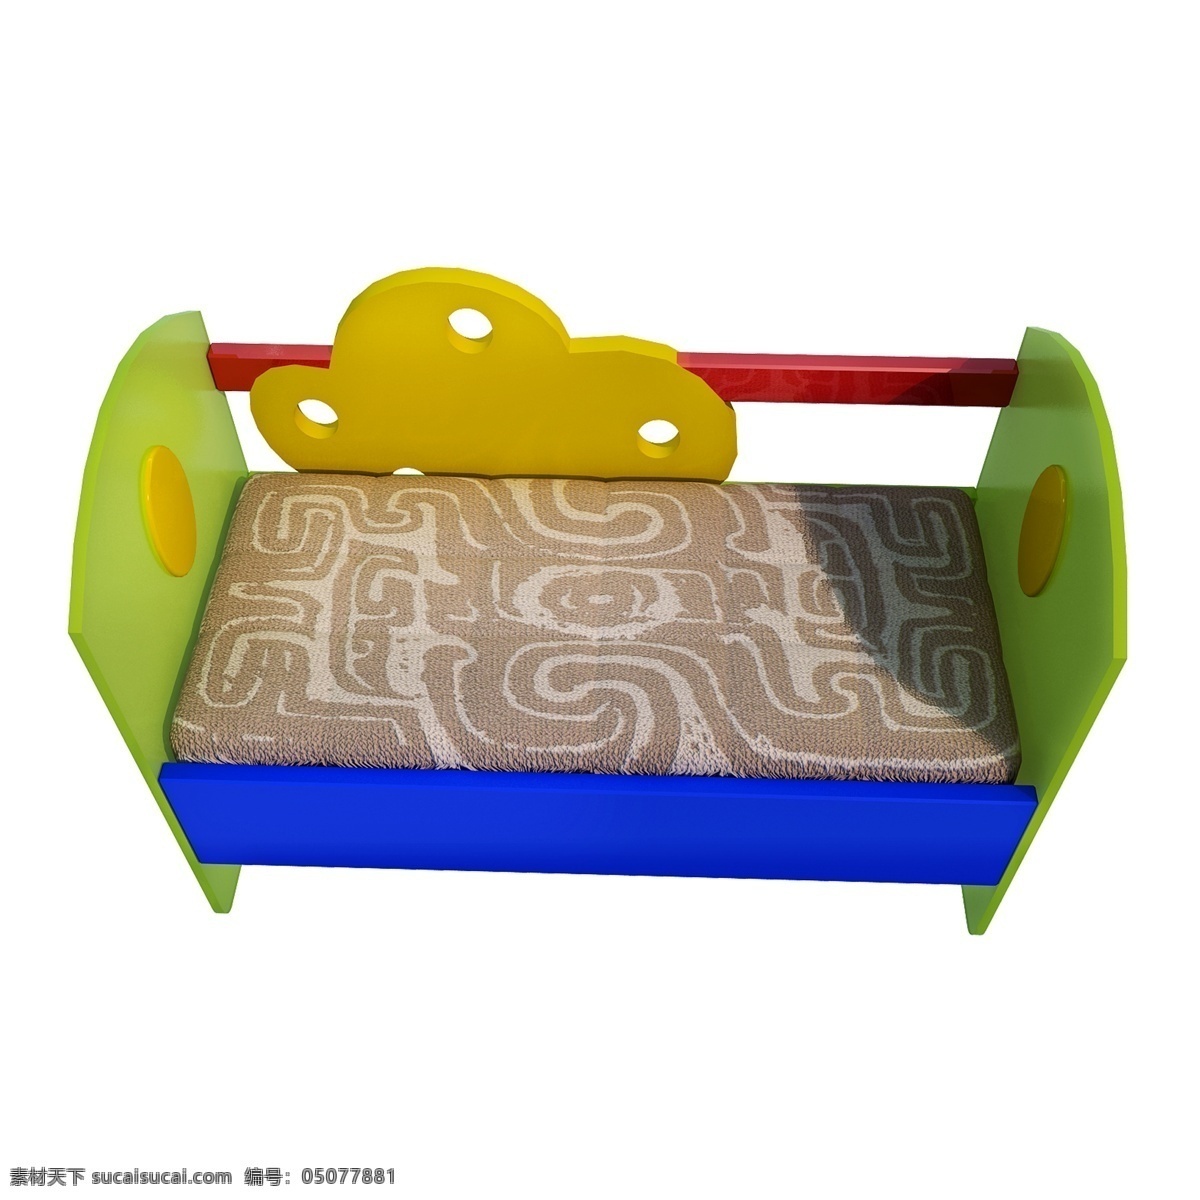 立体 婴儿床 图 婴儿用品 质感 png图 创意 3d 套图 养孩子 组装床 婴儿房 育儿